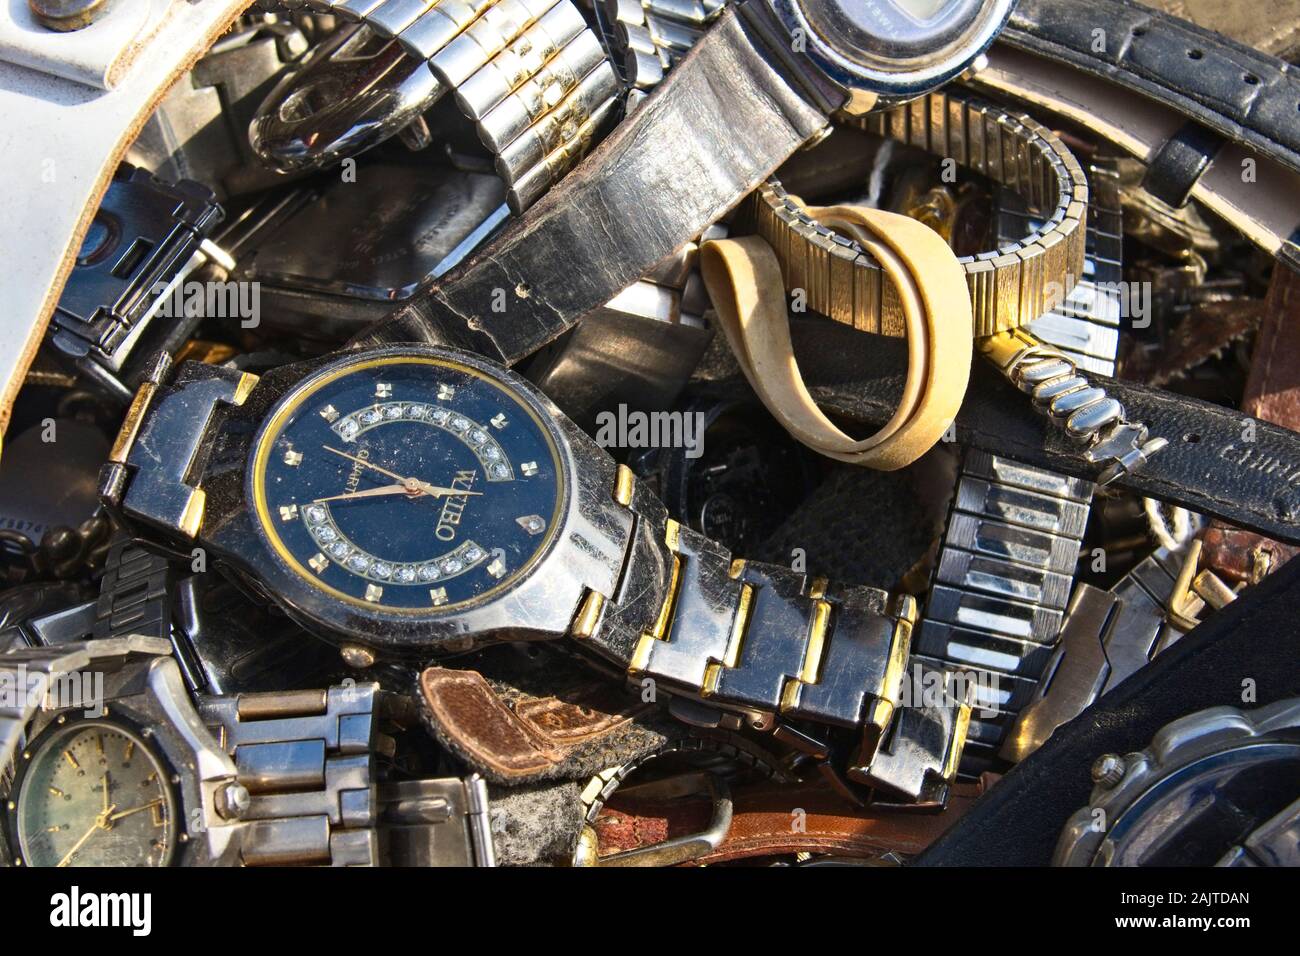 Collezione di orologi usati trovata ad un mercatino delle pulci locale Foto  stock - Alamy